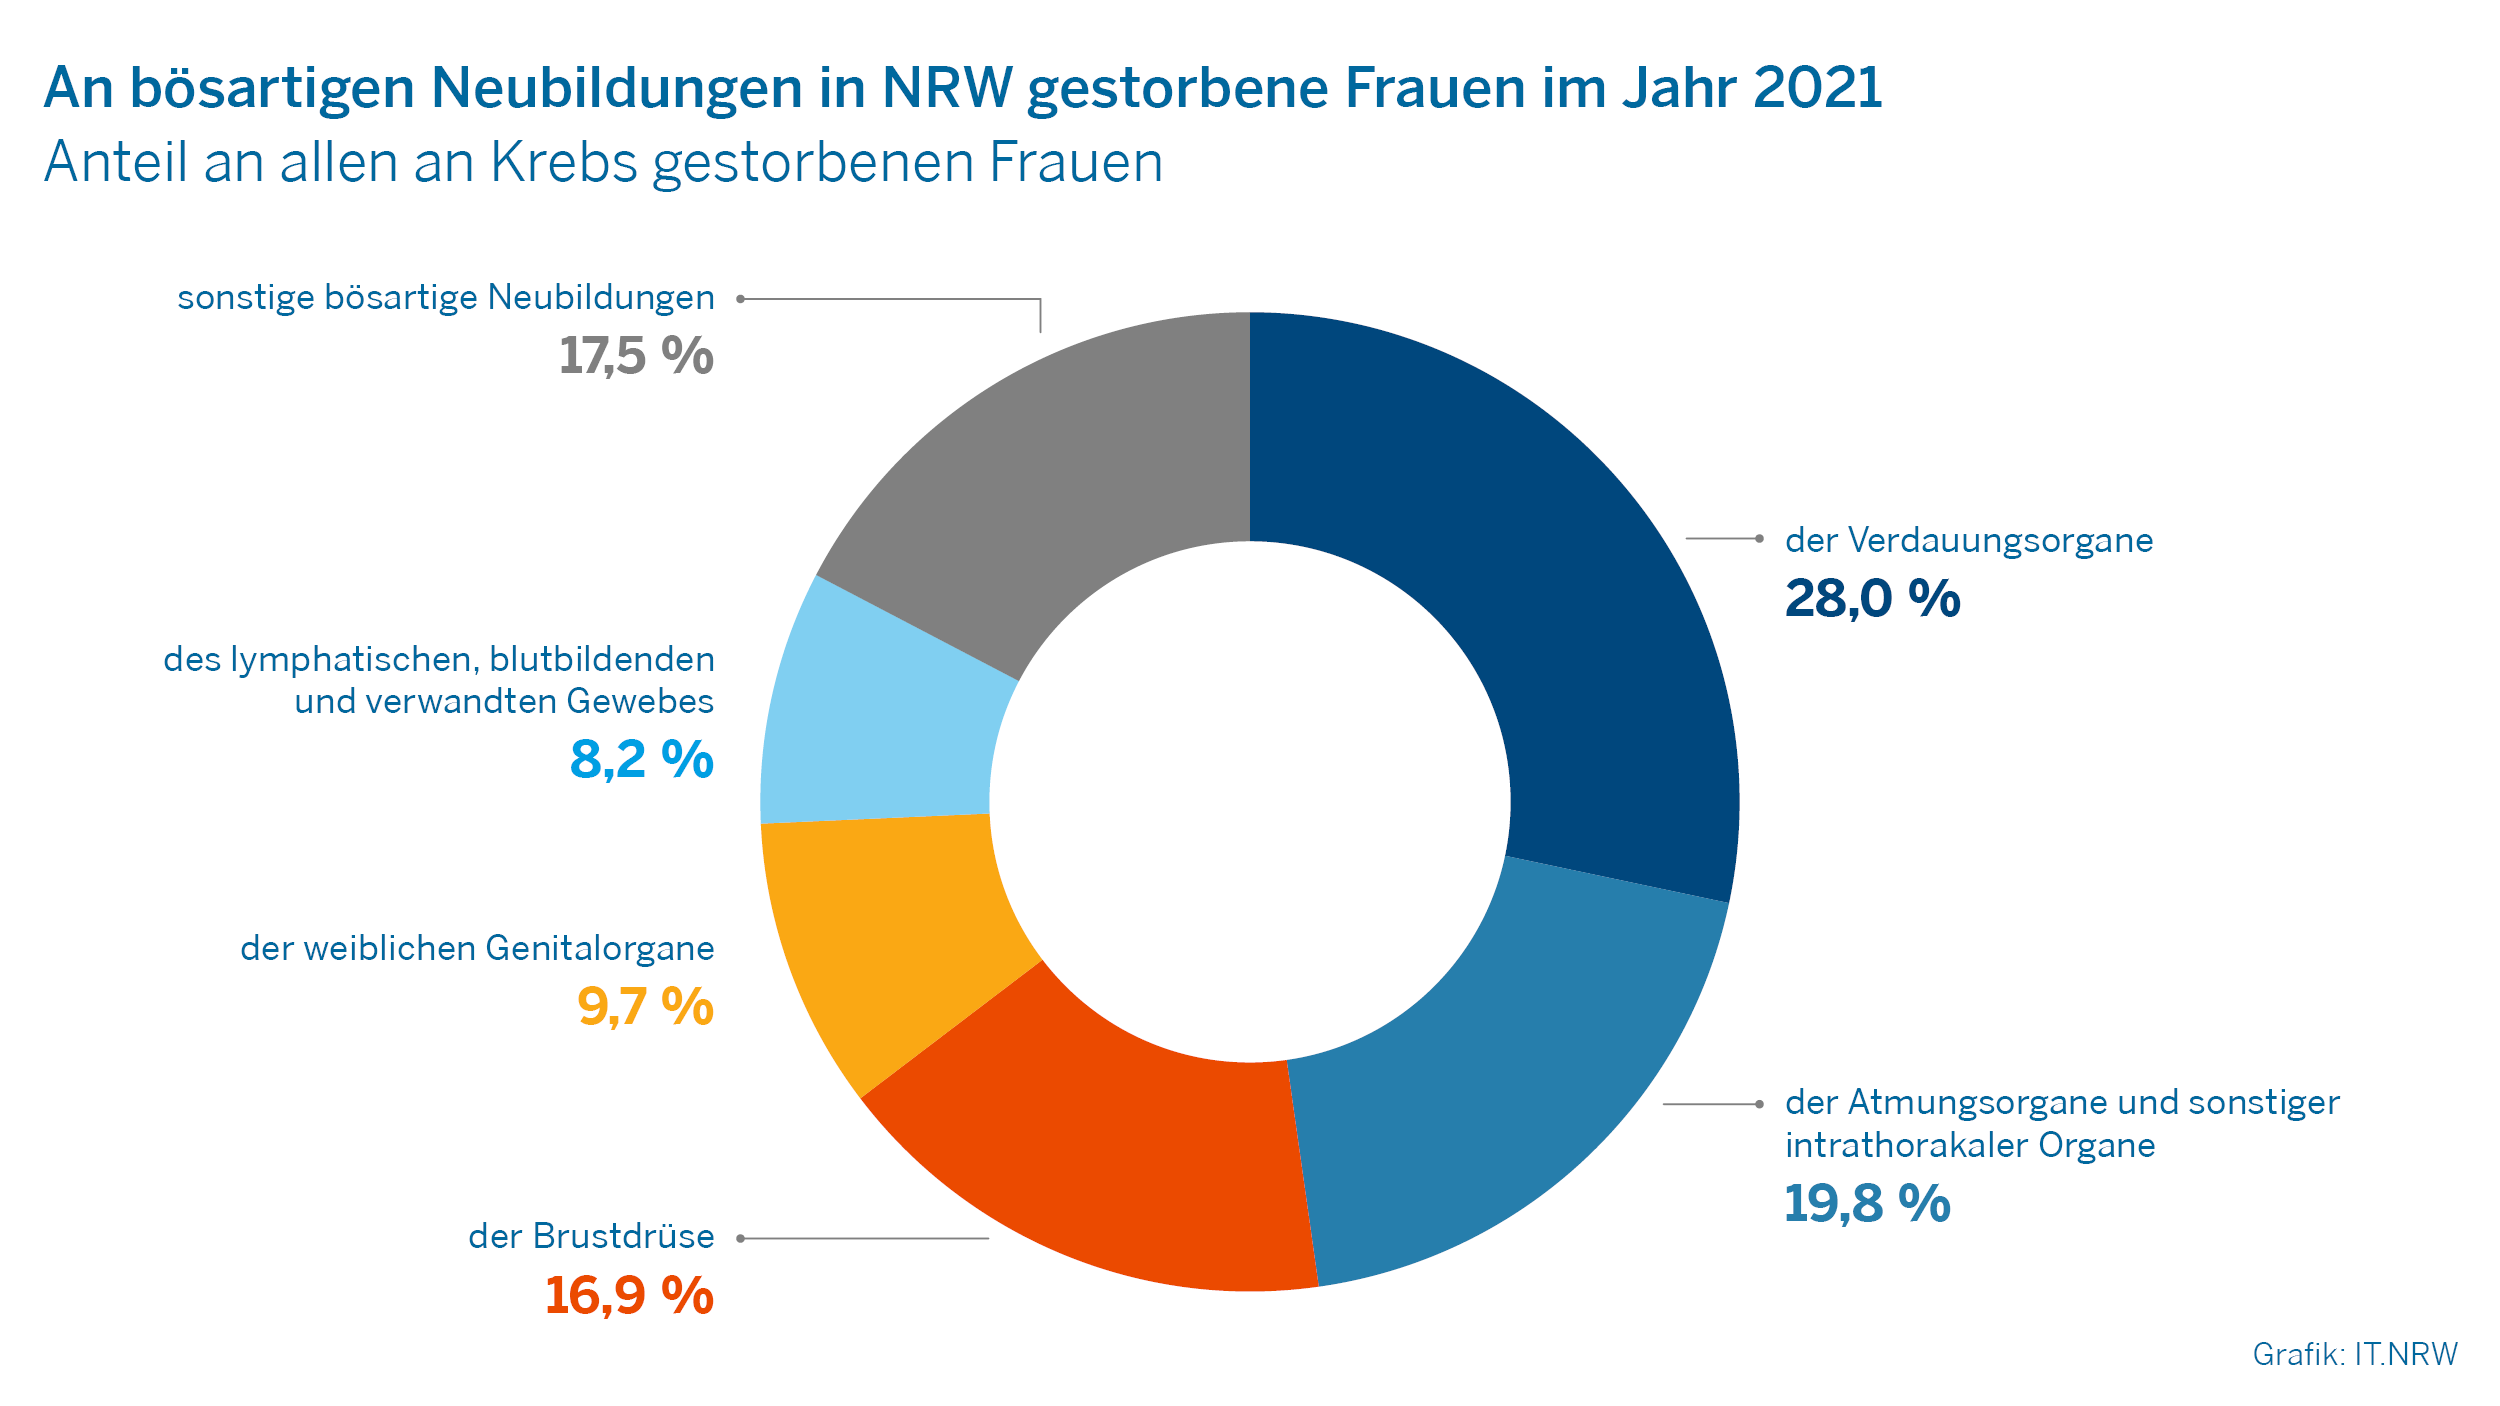 An bösartigen Neubildungen in NRW gestorbene Frauen im Jahr 2021